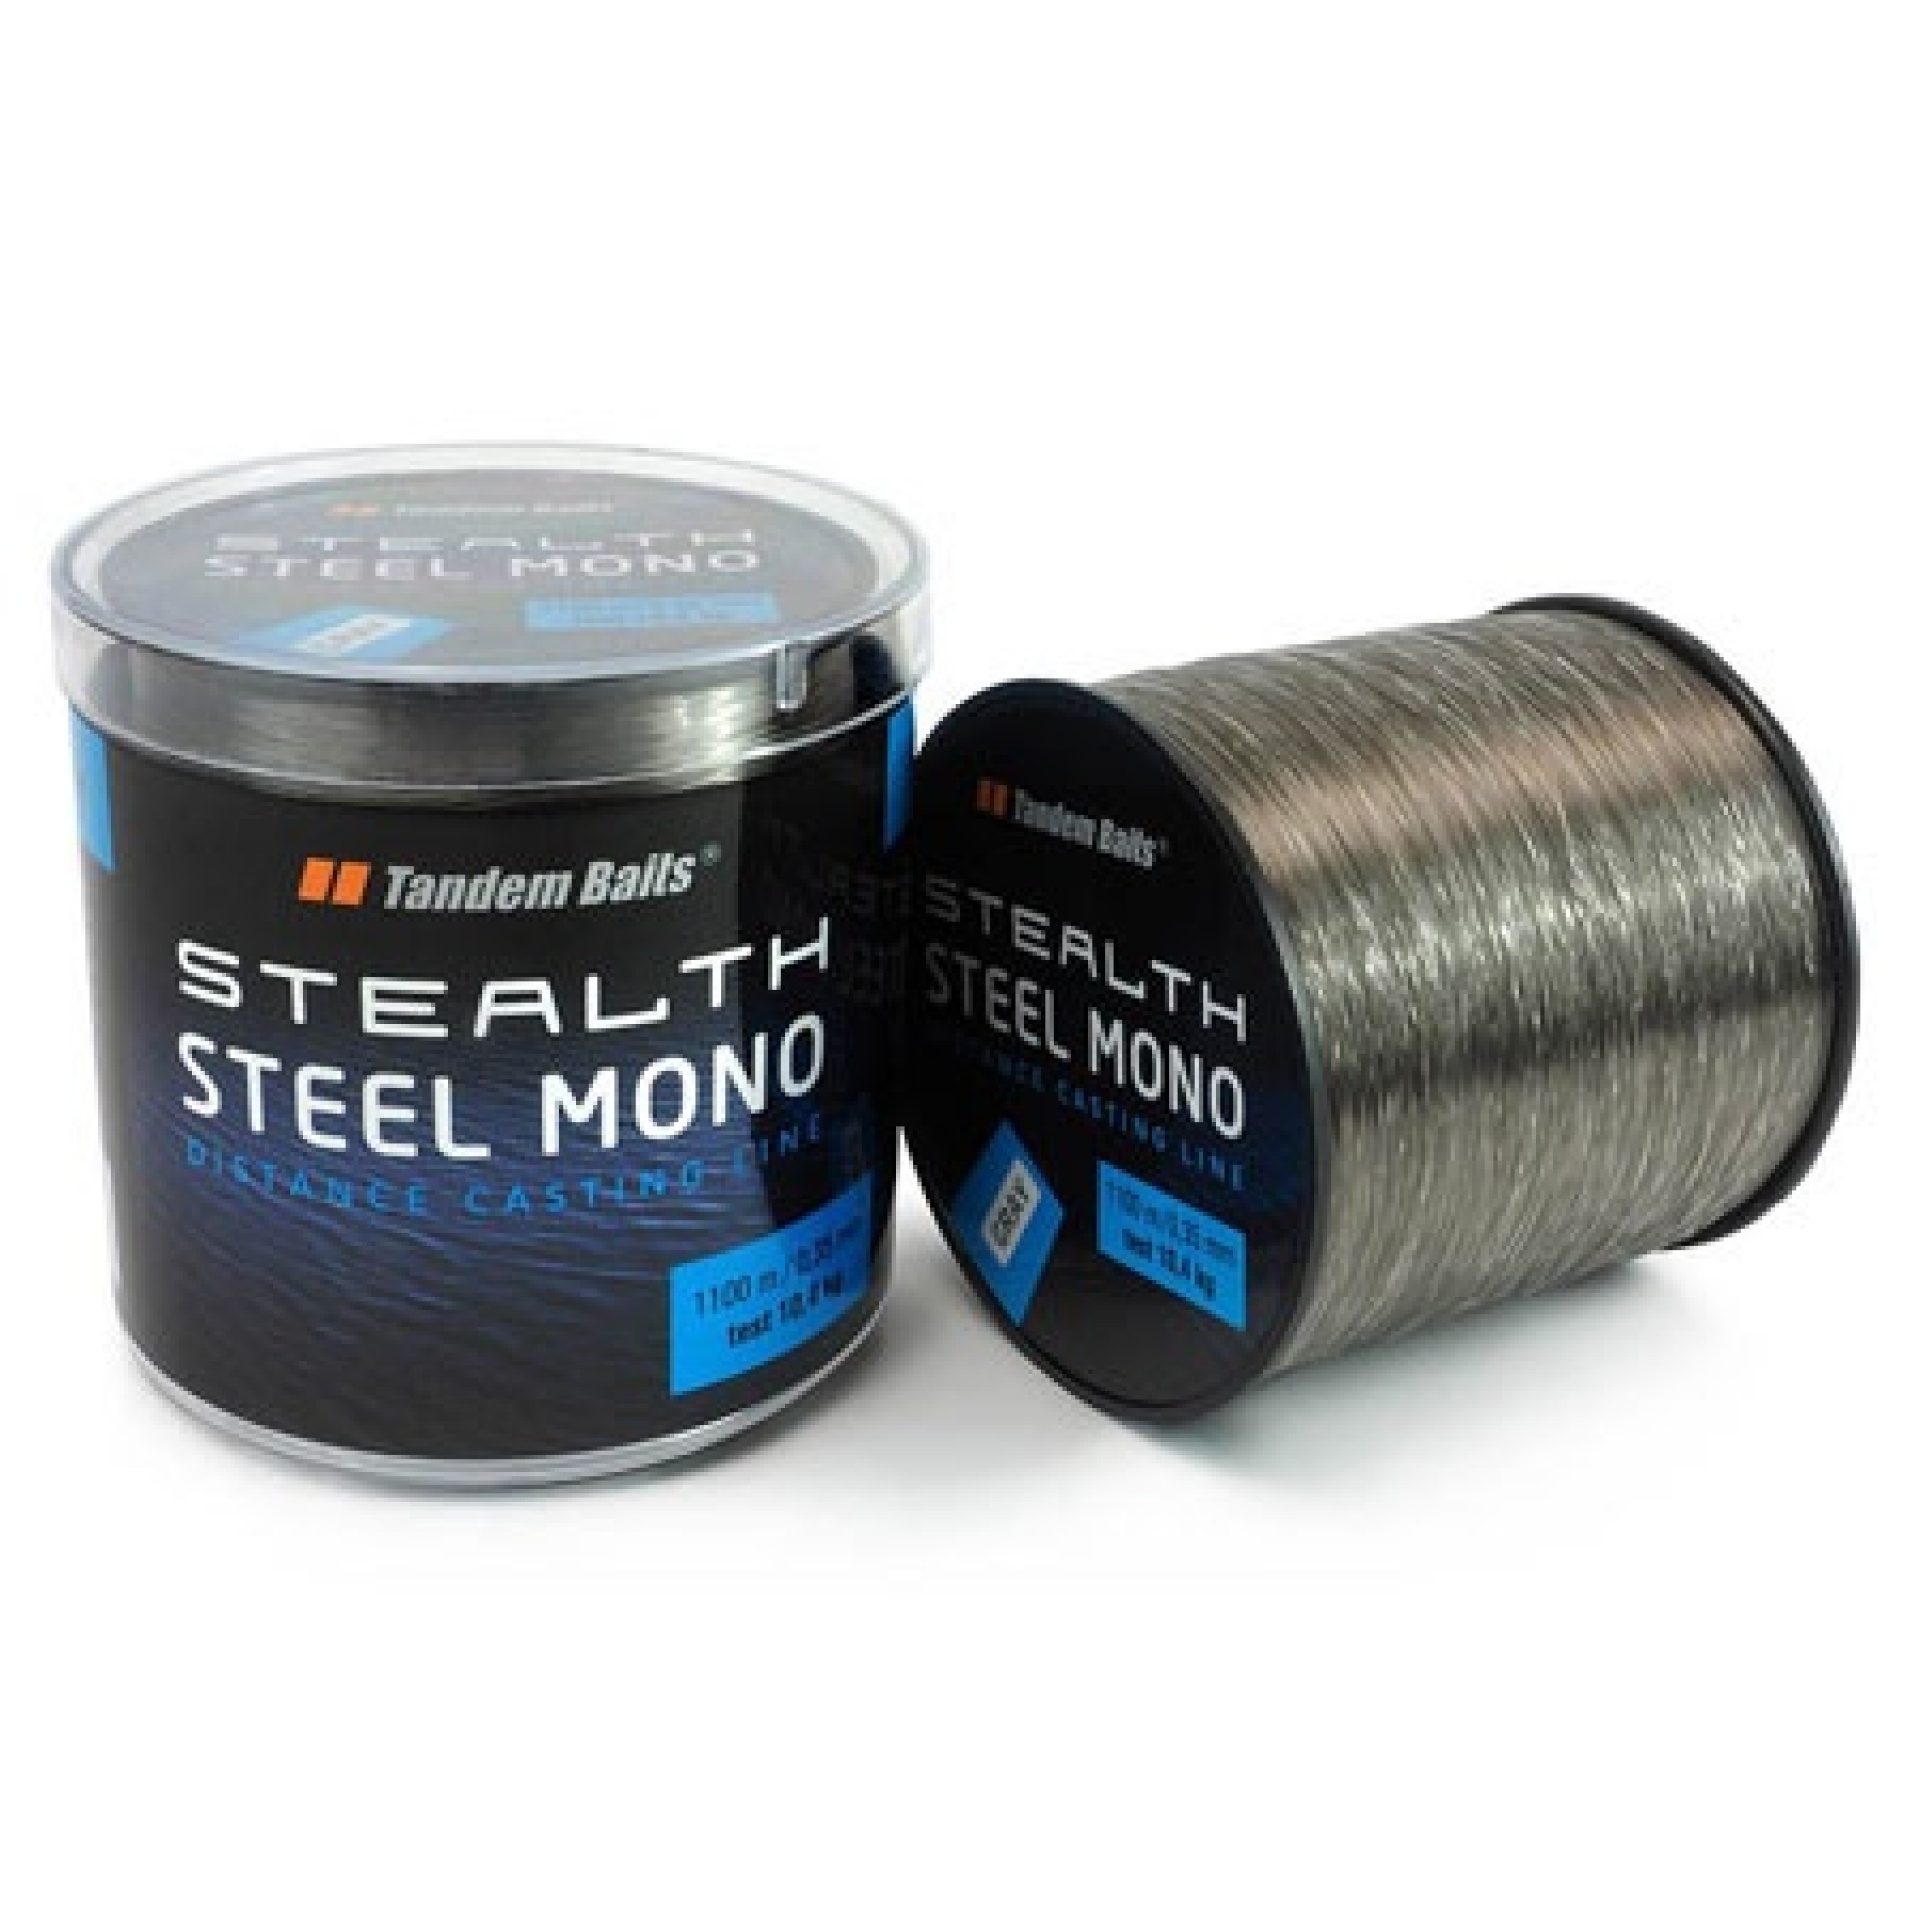 Tandem Baits Stealth Steel Mono - Schnur